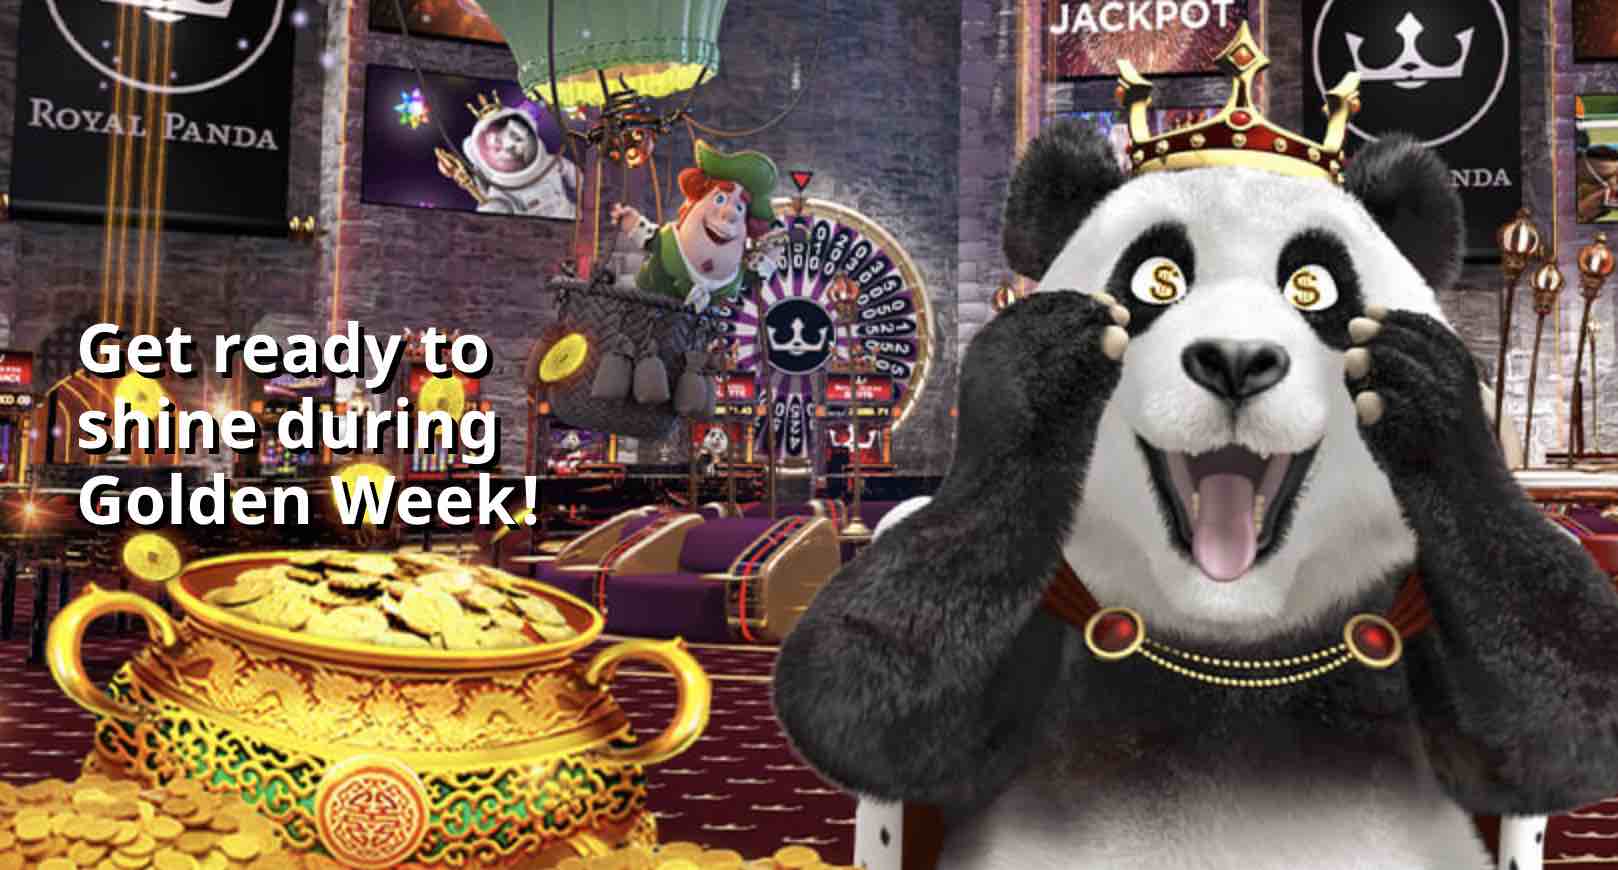 Royal Panda Golden Week